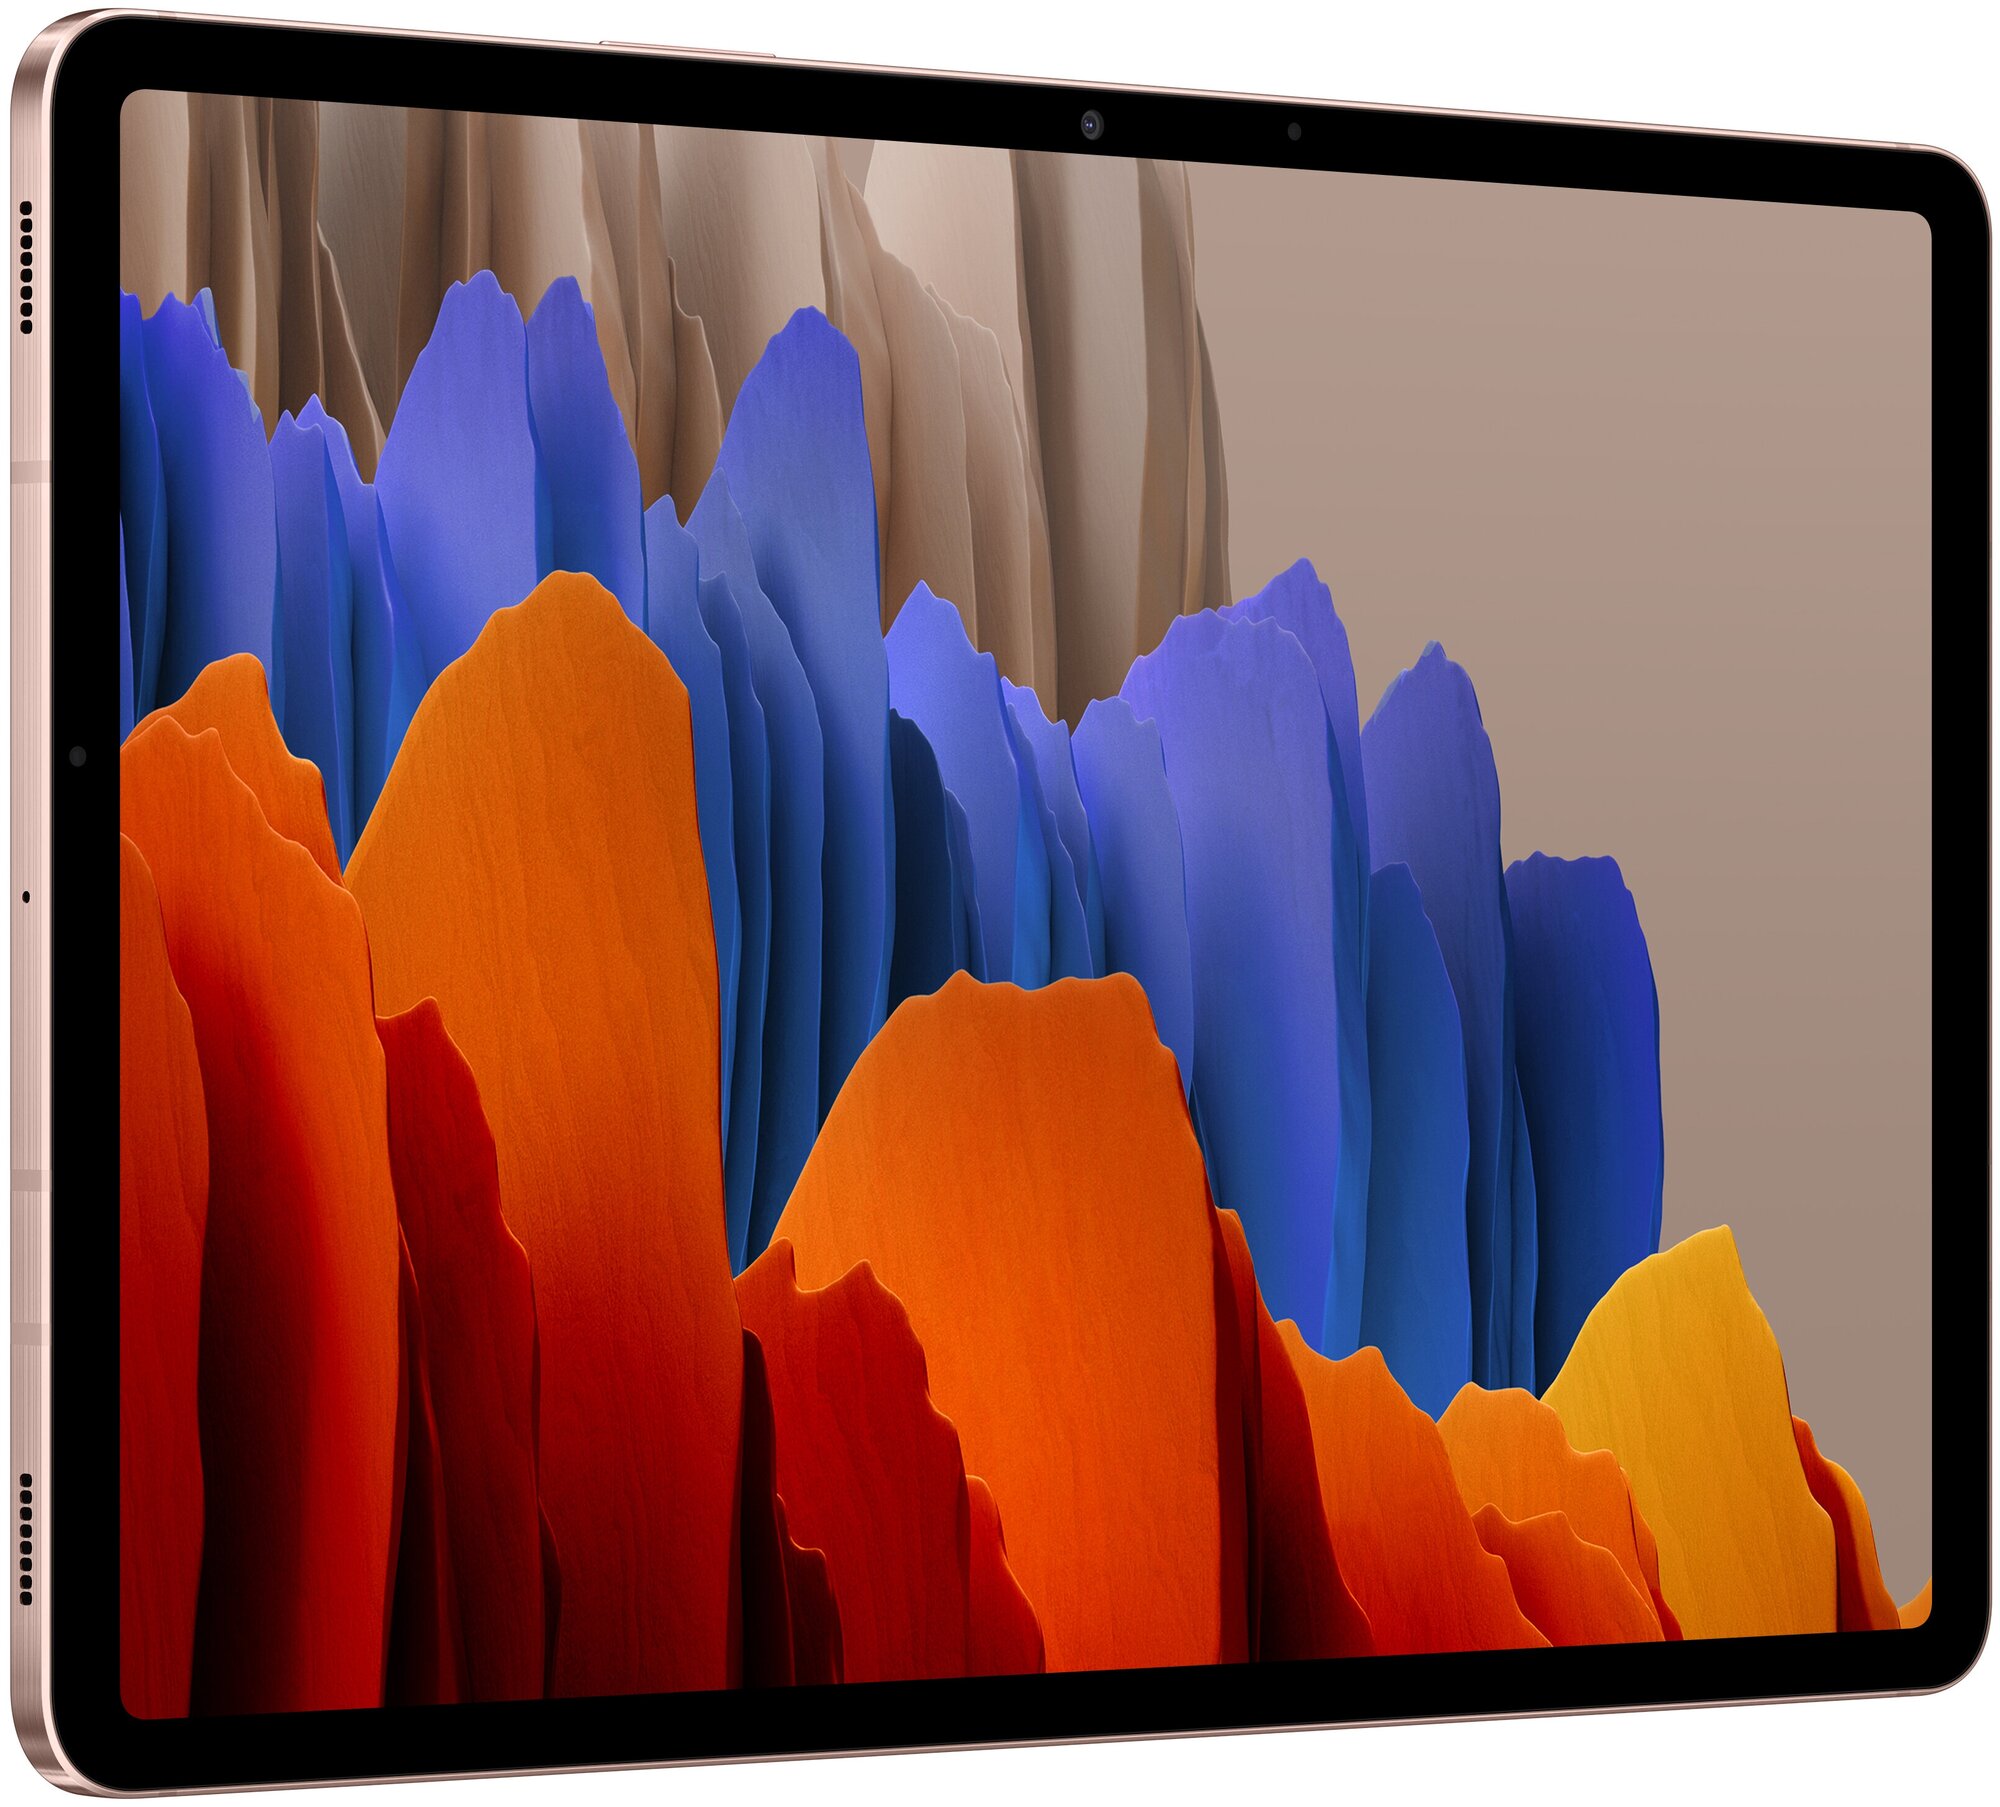 Планшет Samsung Galaxy Tab S7 11 SM-T870 Wi-Fi (2020) — Планшеты — купить  по выгодной цене на Яндекс Маркете